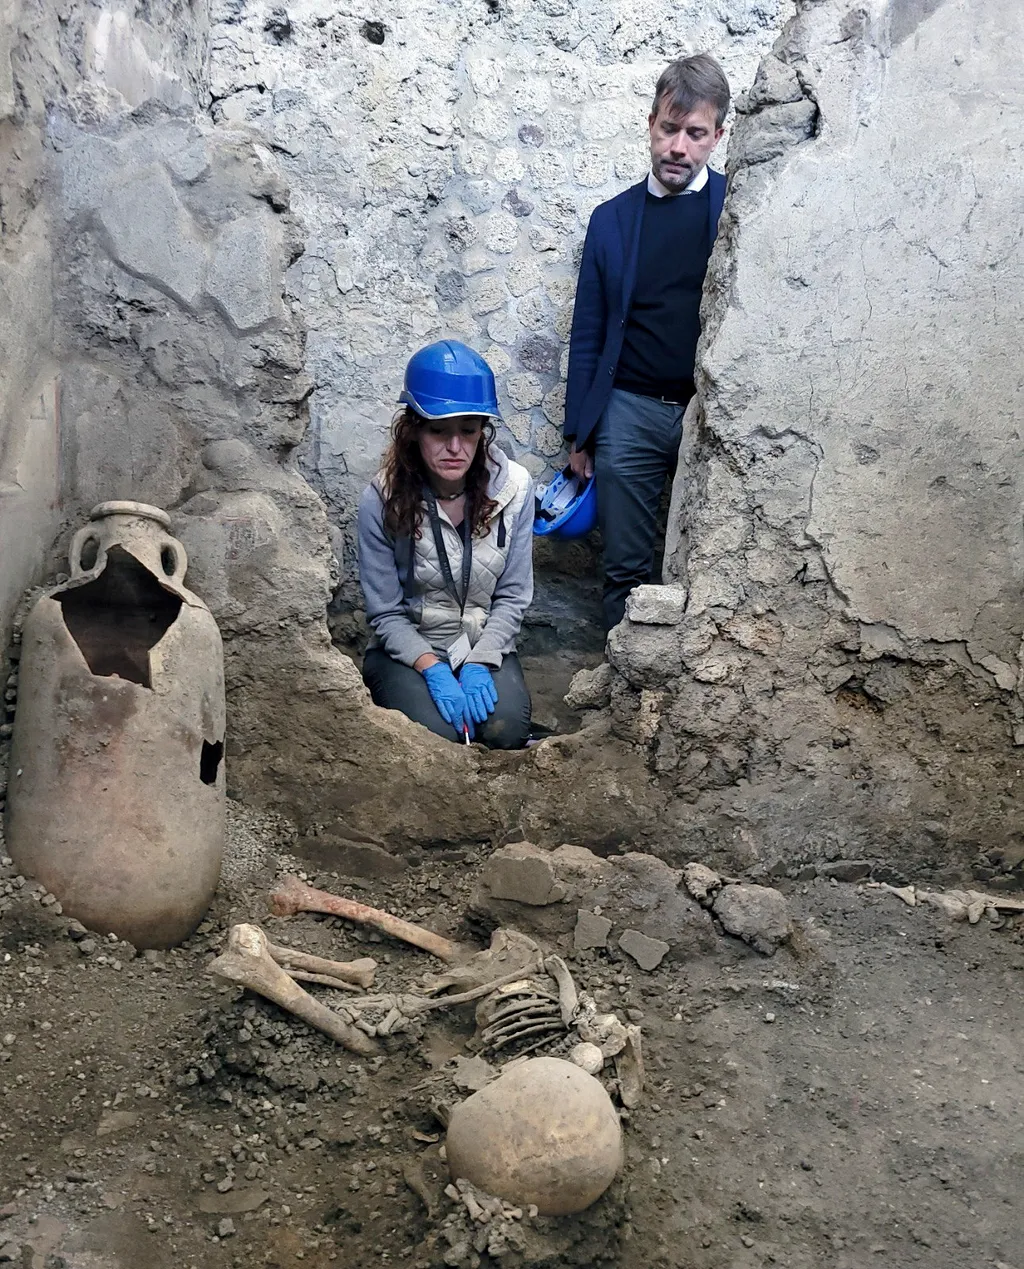 Pompeji, ásatás, régészet, Olaszország
A Pompeji Régészeti Park által 2023. május 16-án közreadott kép két feltehetőleg férfi csontváz egyikéről, amelyeket a közelmúltban találtak meg az oldalukon fekve a pompeji Casti Amanti épületegyüttes leomlott fala 